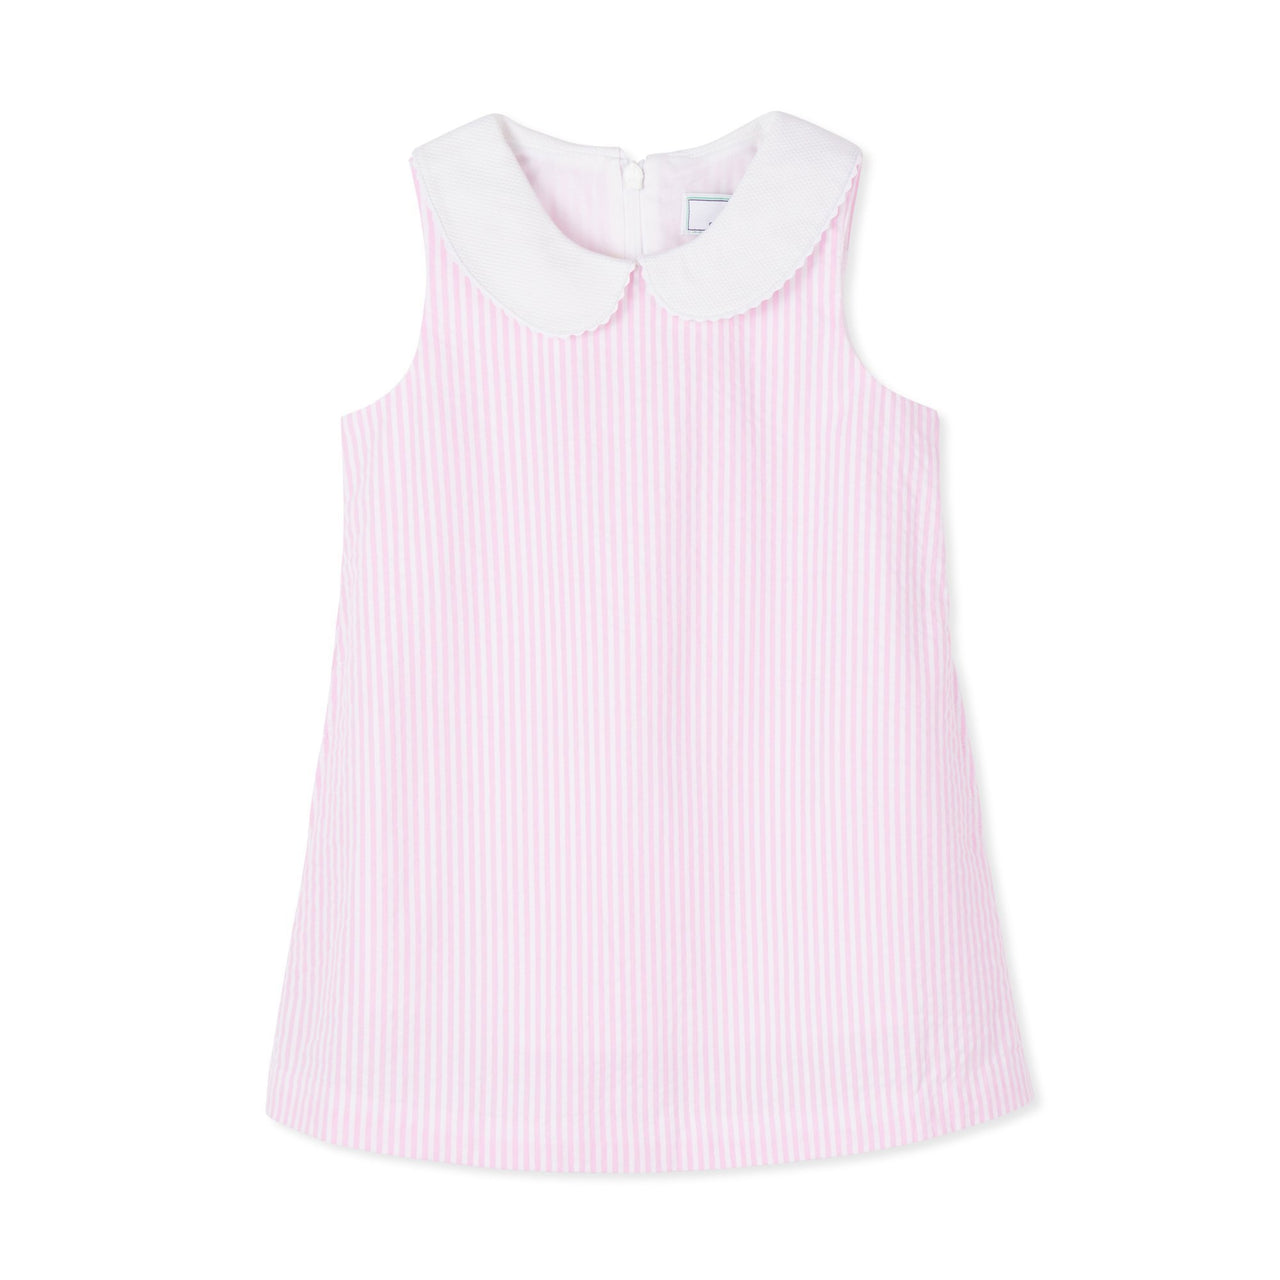 Maddie Dress - Pink and White Seersucker